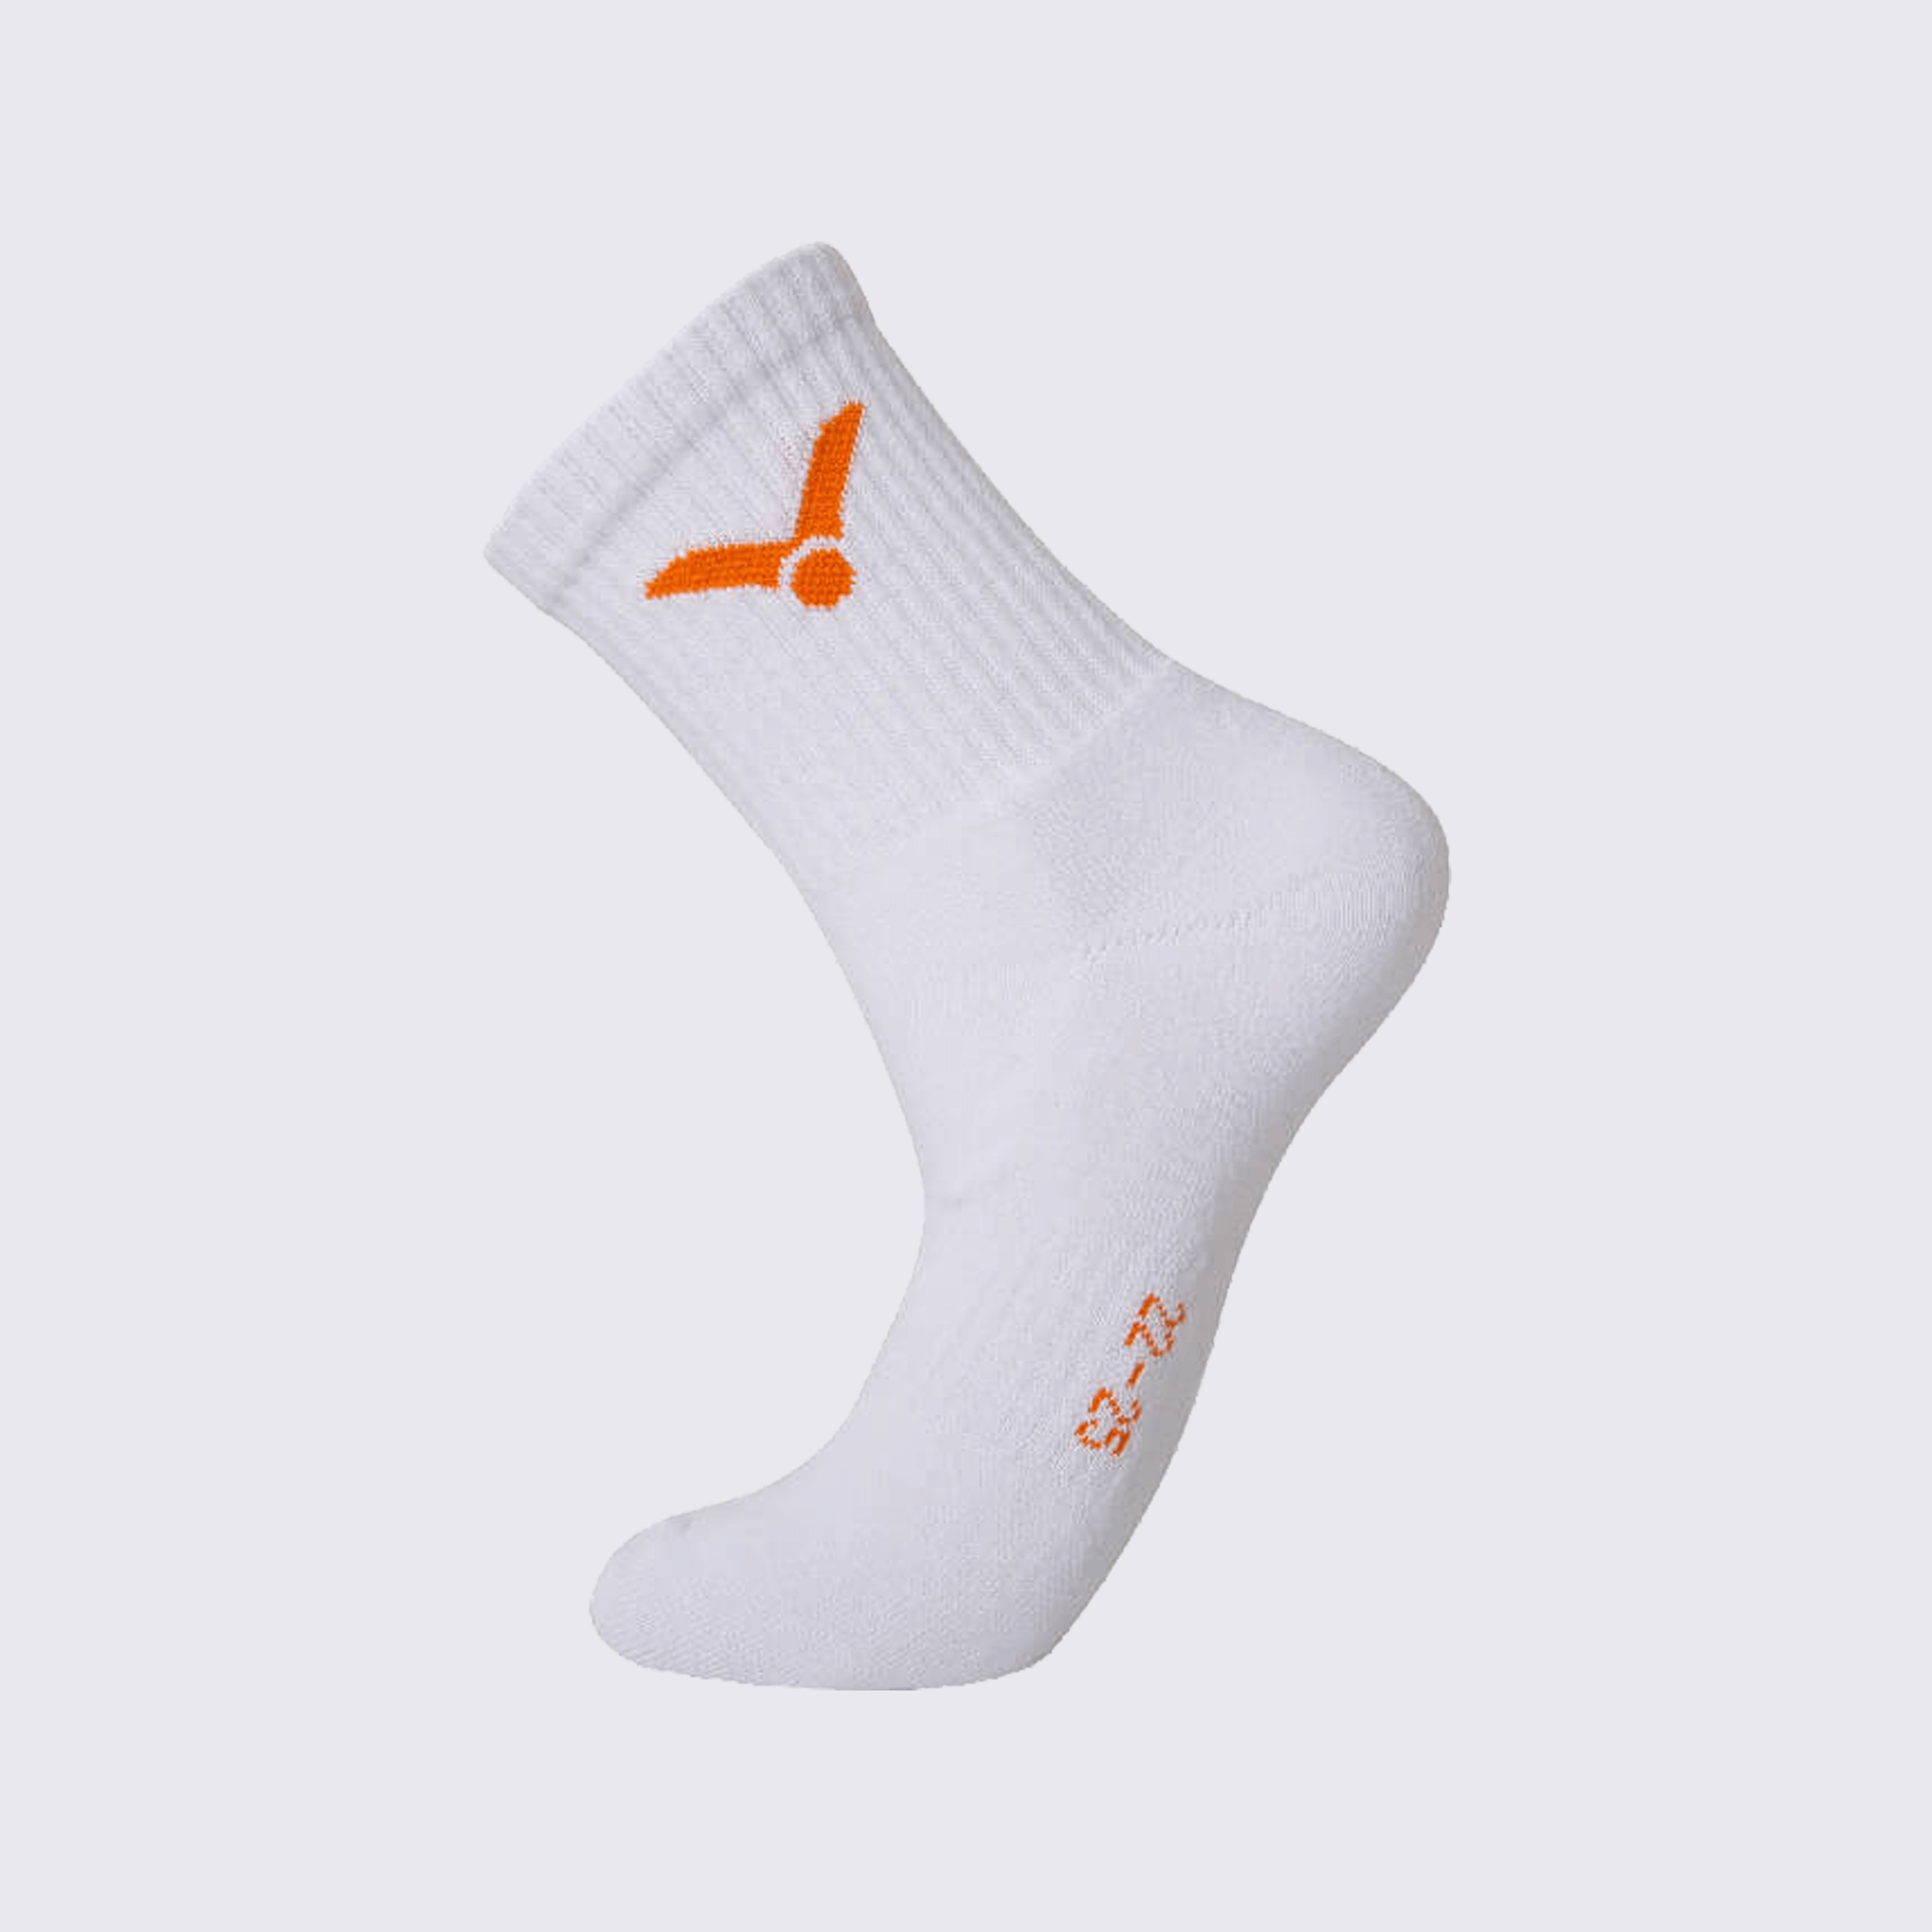 Victor x LZJ Women's Sport Socks SK-LZJ306 A (White)